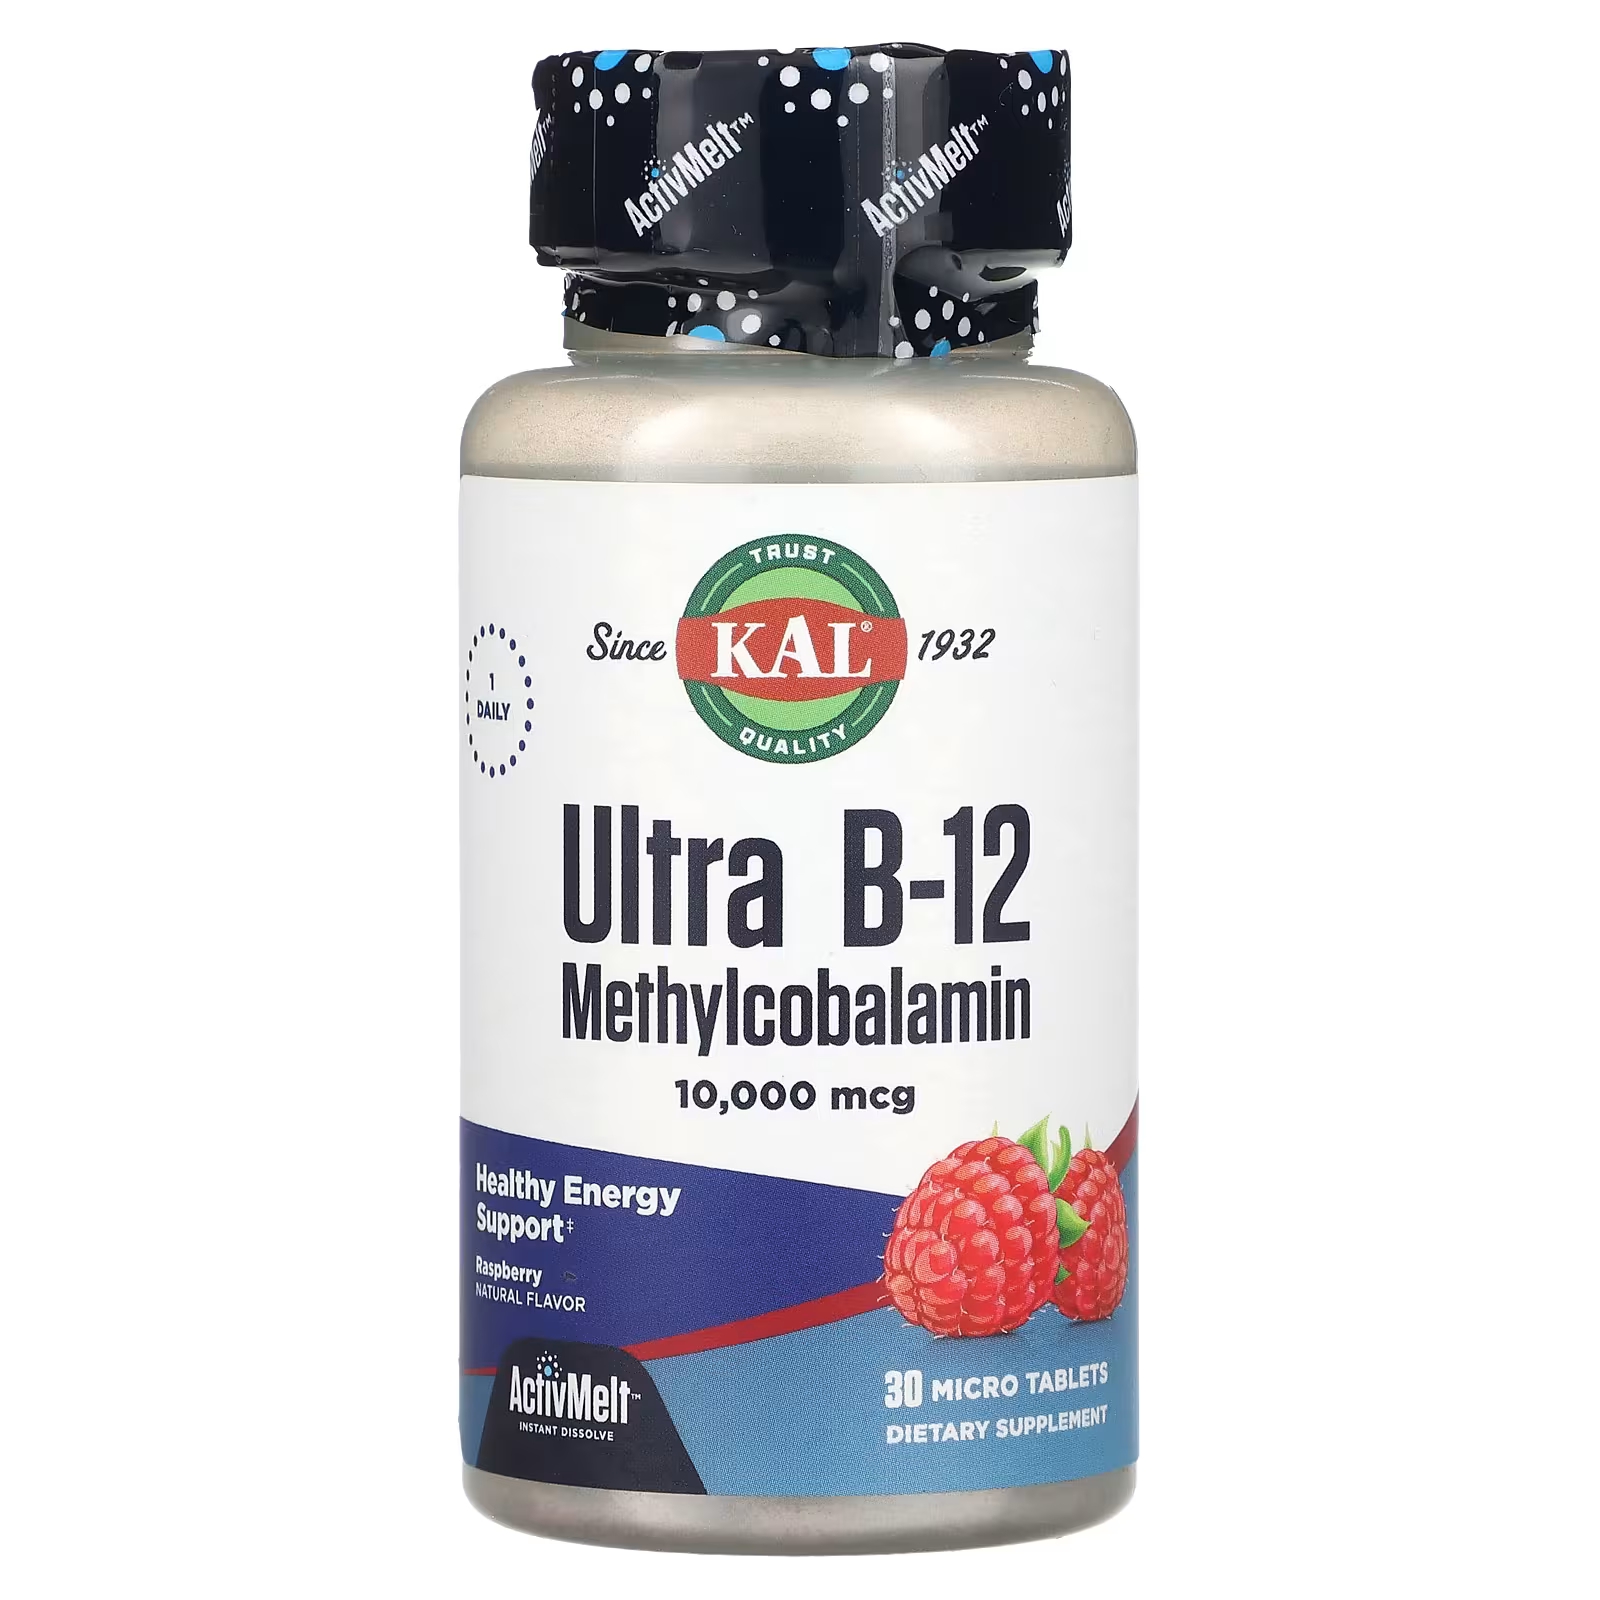 Метилкобаламин малина Kal Ultra B-12, 30 микротаблеток kal b 6 b 12 фолиевая кислота ягода 60 микротаблеток